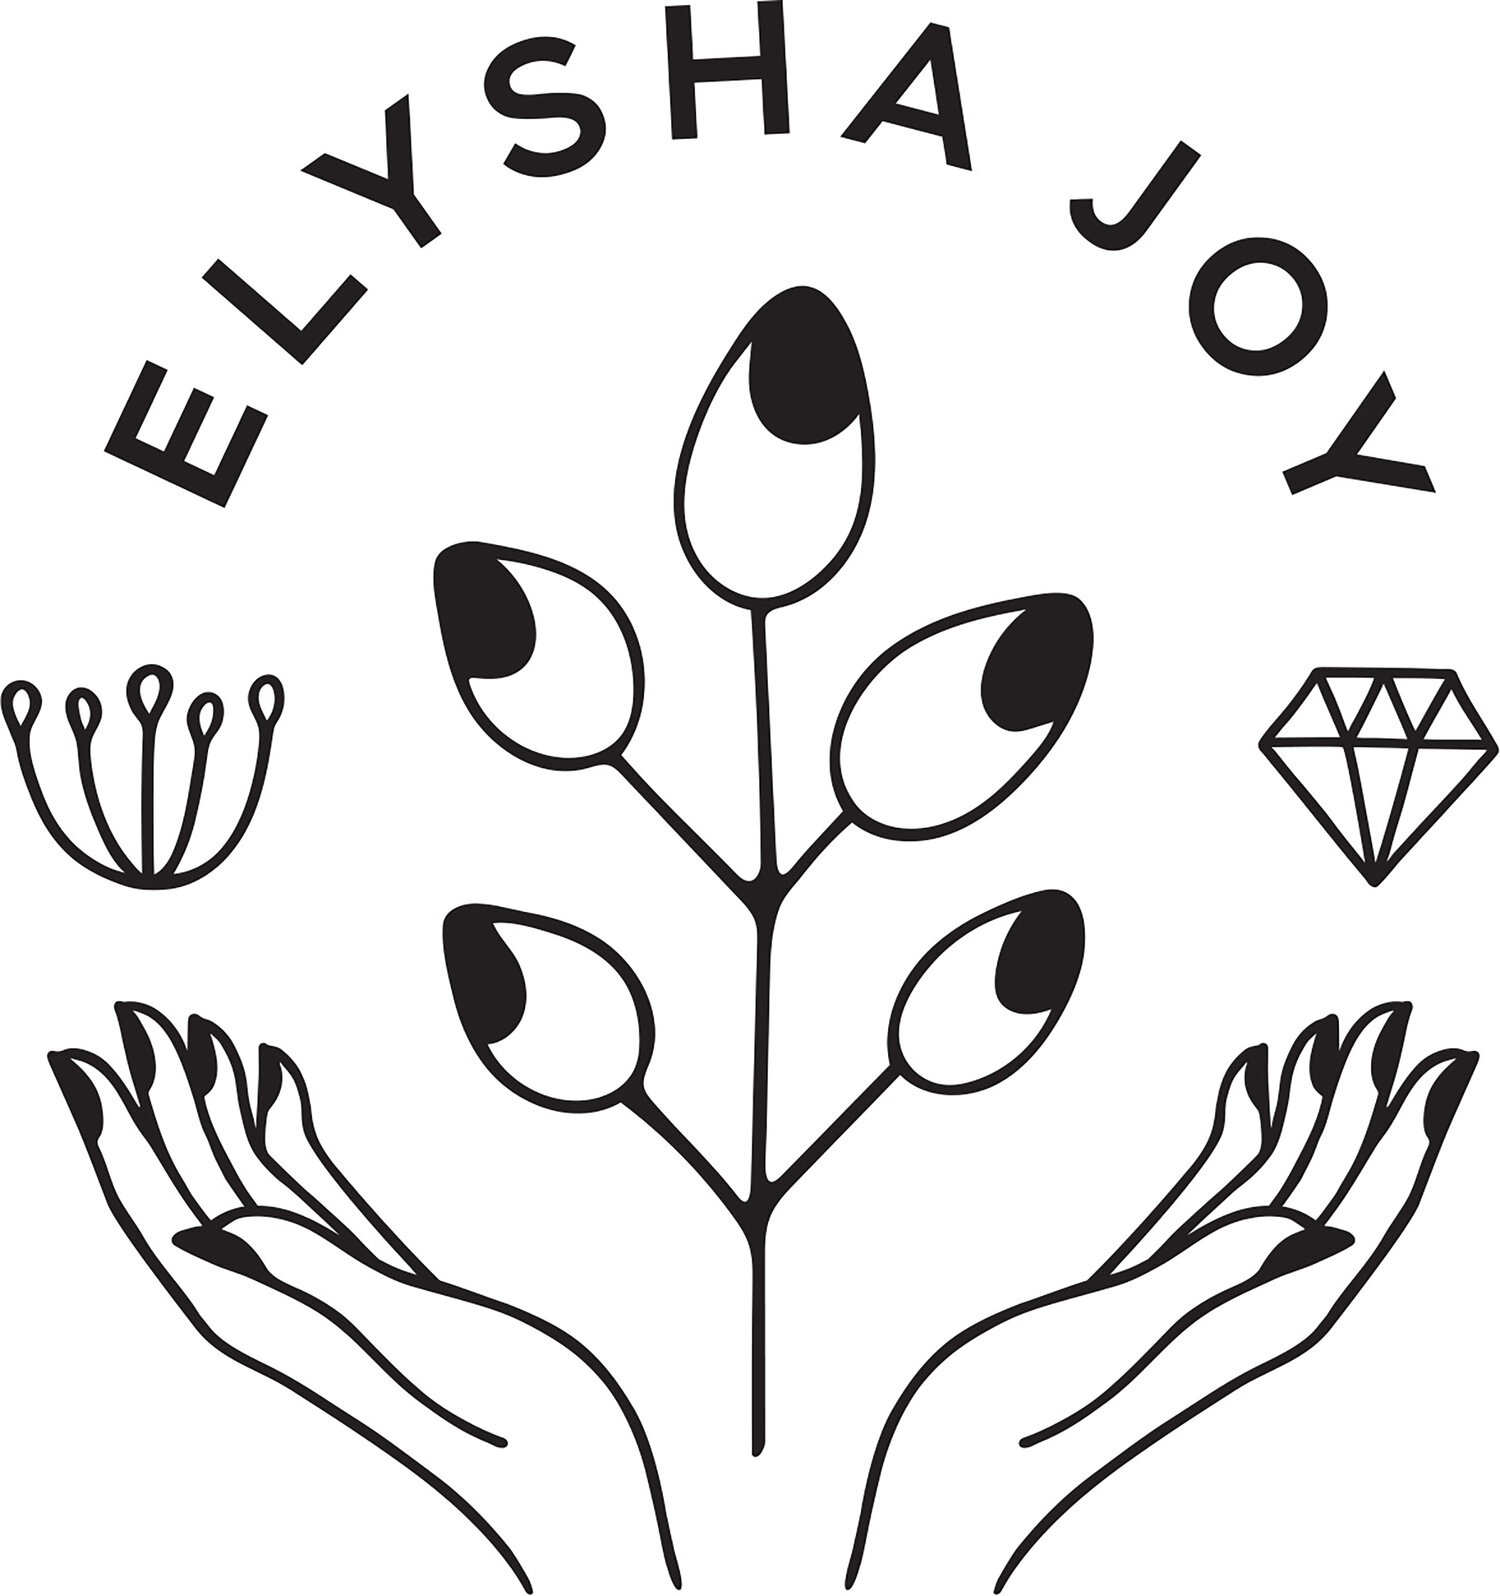 ELYSHA JOY